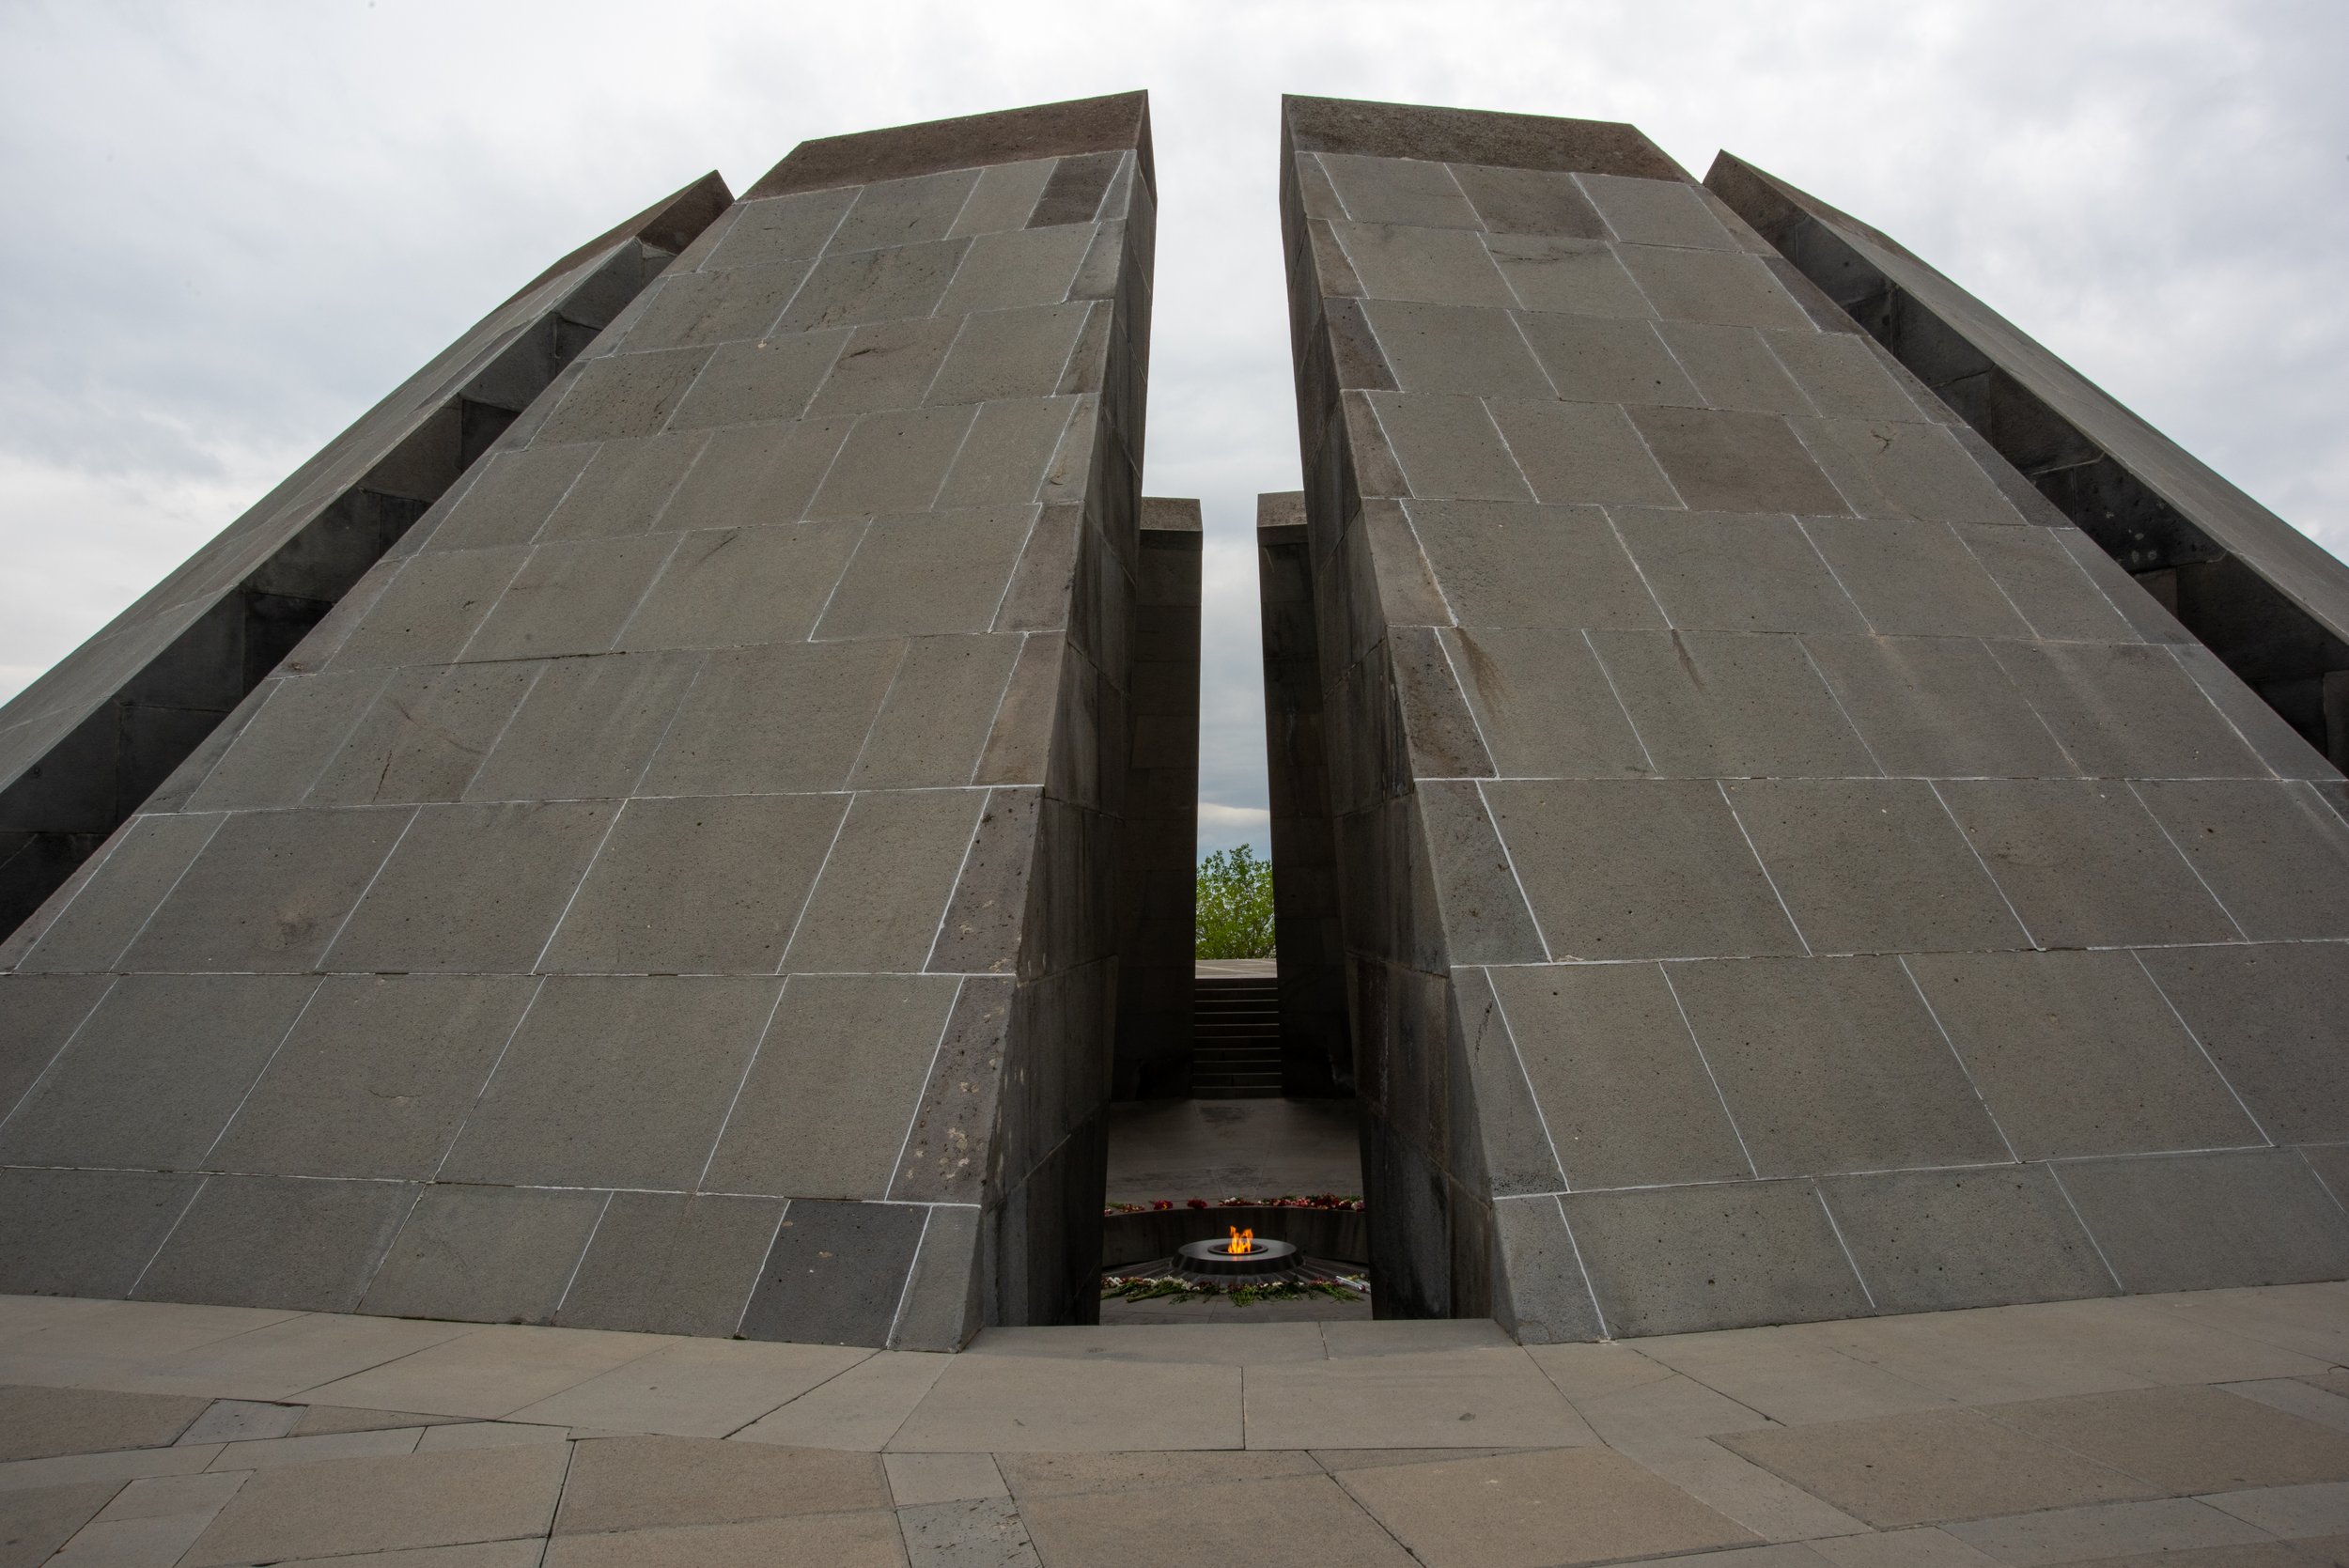  Genocide Memorial, Yerevan, Armenia 